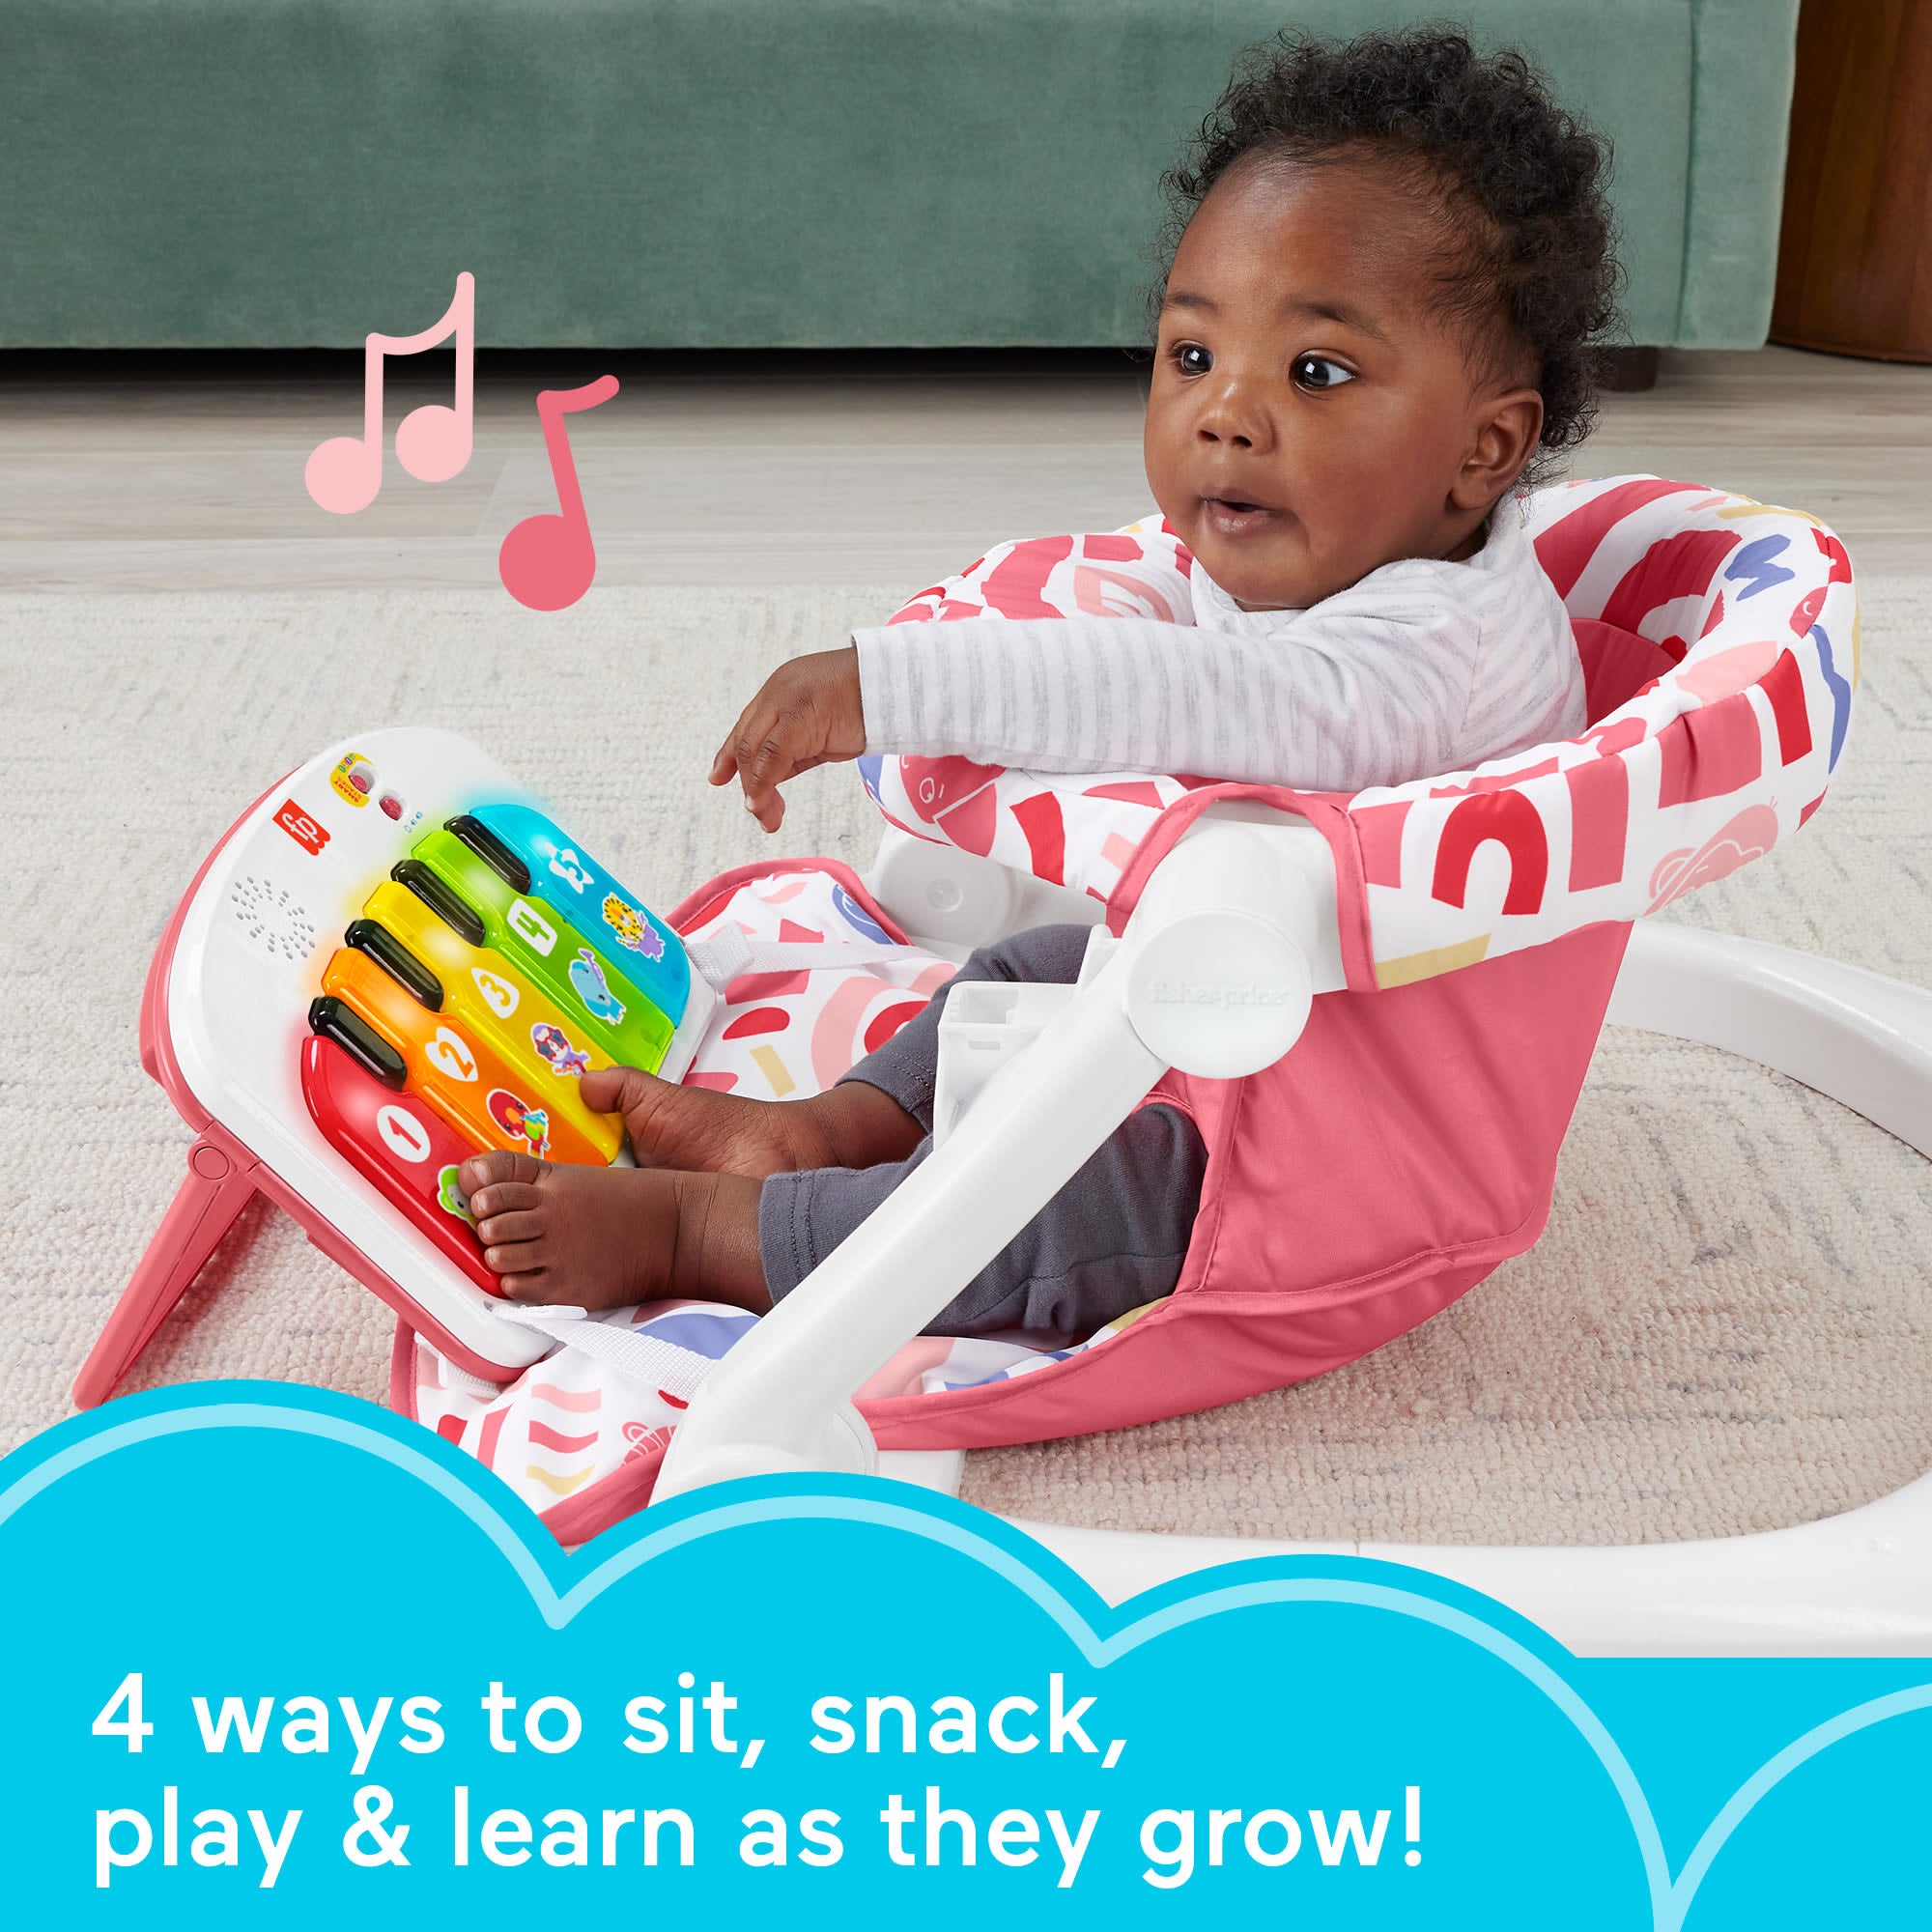 Chaise bébé Fisher-Price, siège de luxe Sit-Me-Up avec jouet  d'apprentissage du piano Kick & Play et plateau à collations 